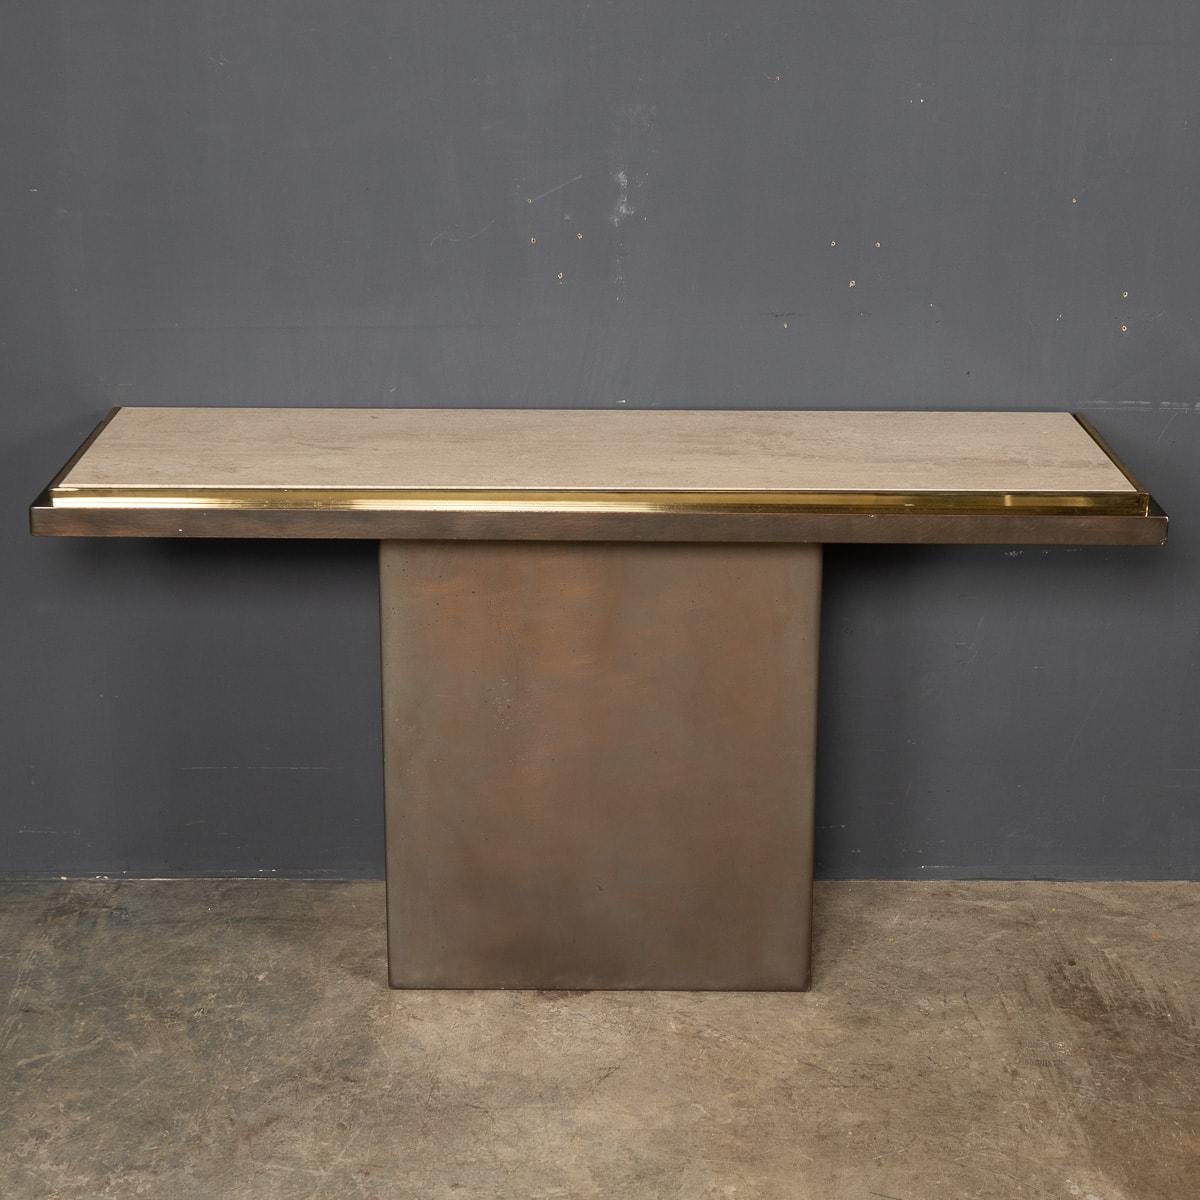 Une superbe table console fabriquée en Belgique au milieu du 20e siècle. Cette table a été fabriquée en bronze, laiton et marbre. La base est en bronze et un cadre en laiton entoure le plateau en marbre travertin.

CONDITION
En très bon état - aucun